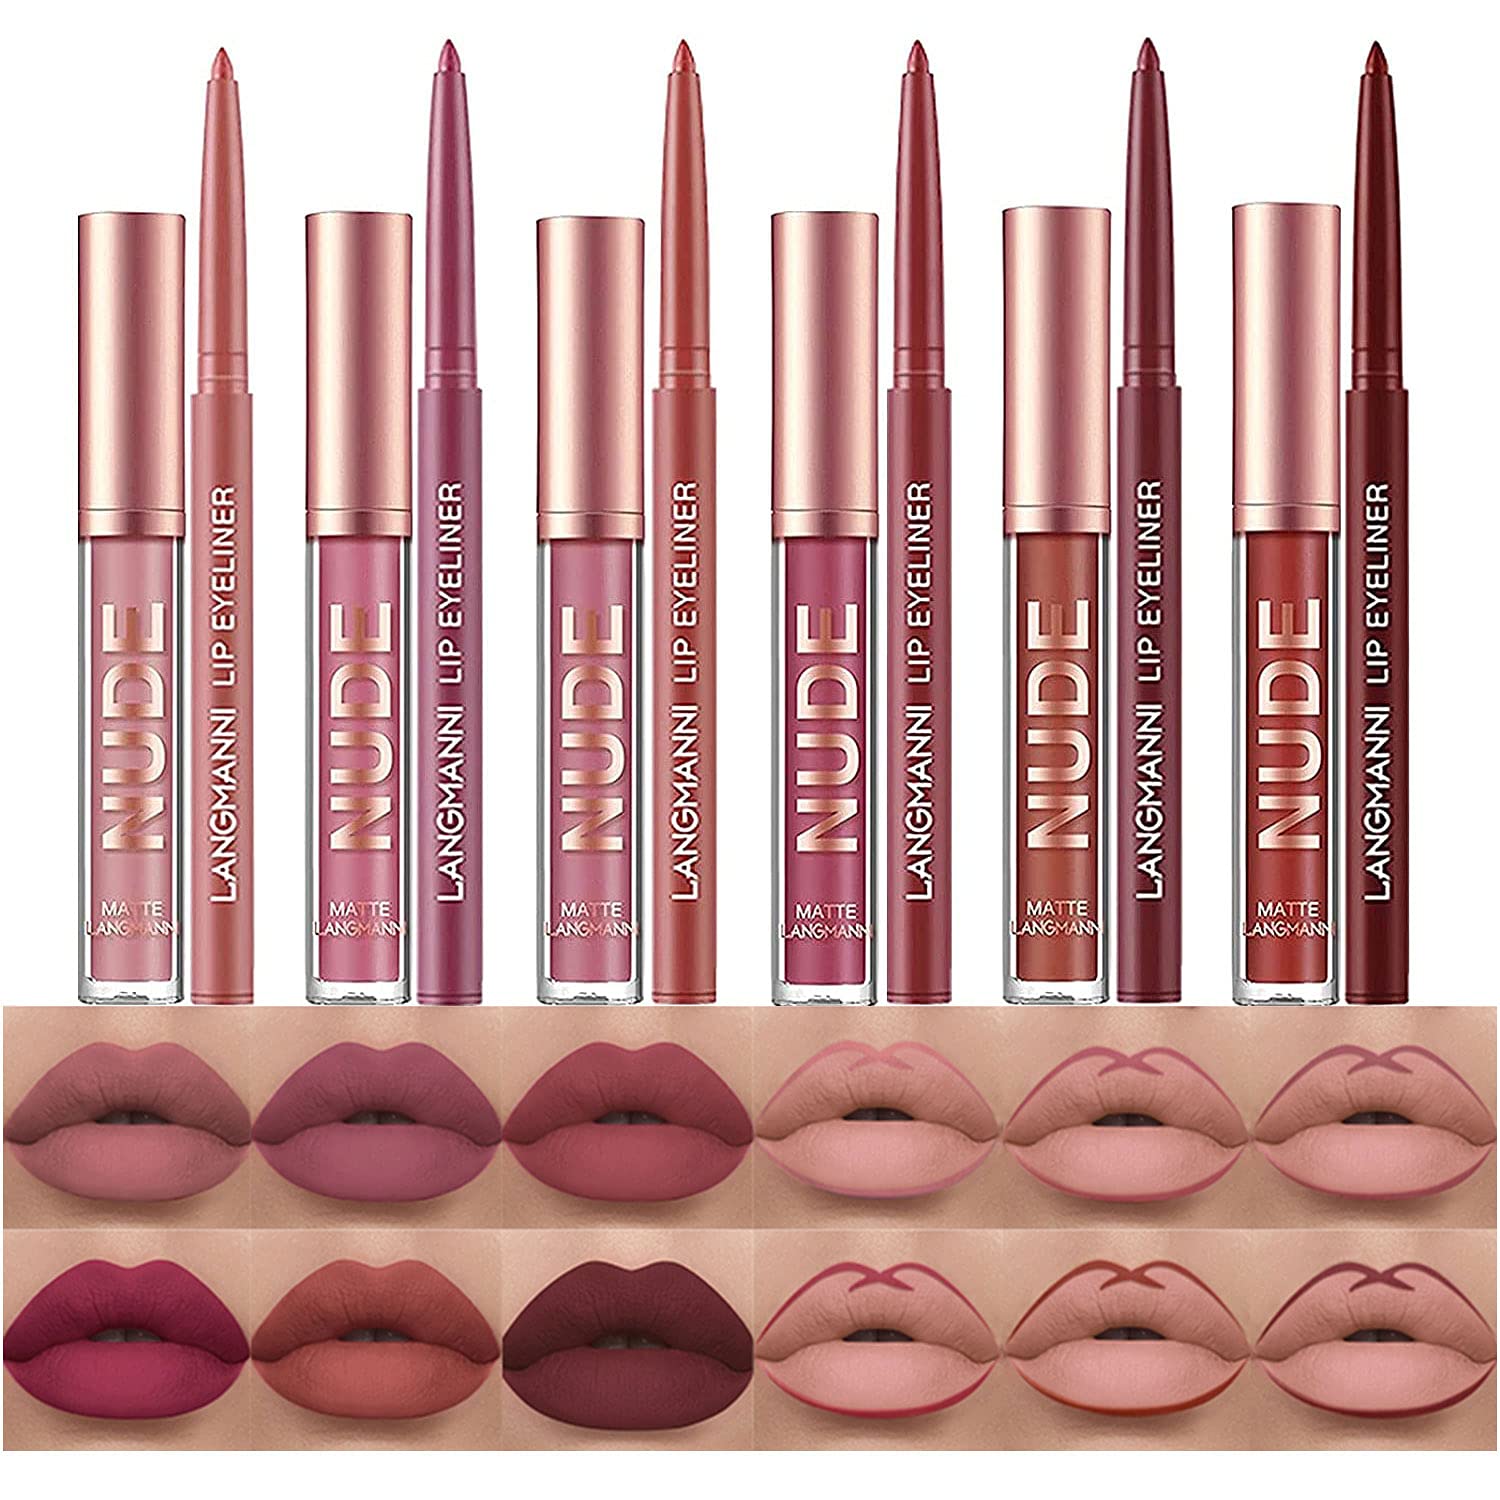 BestLand High-Coverage Liquid Lipstick & Liner Lip Kit, 12-Piece